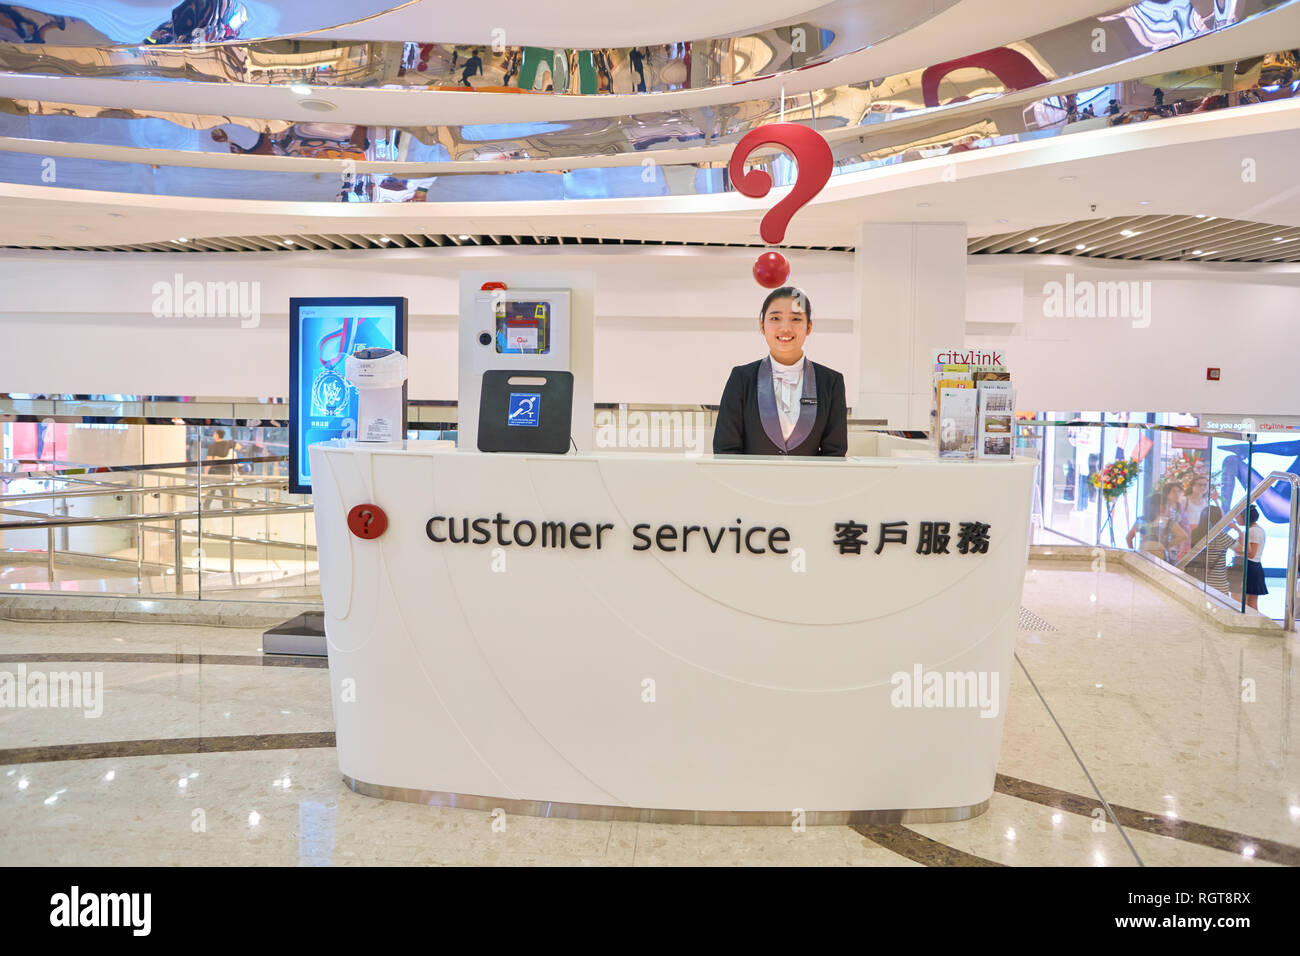 HONG KONG - circa 2016, novembre : le service à la clientèle au centre commercial de la Plaza Citylink. Banque D'Images